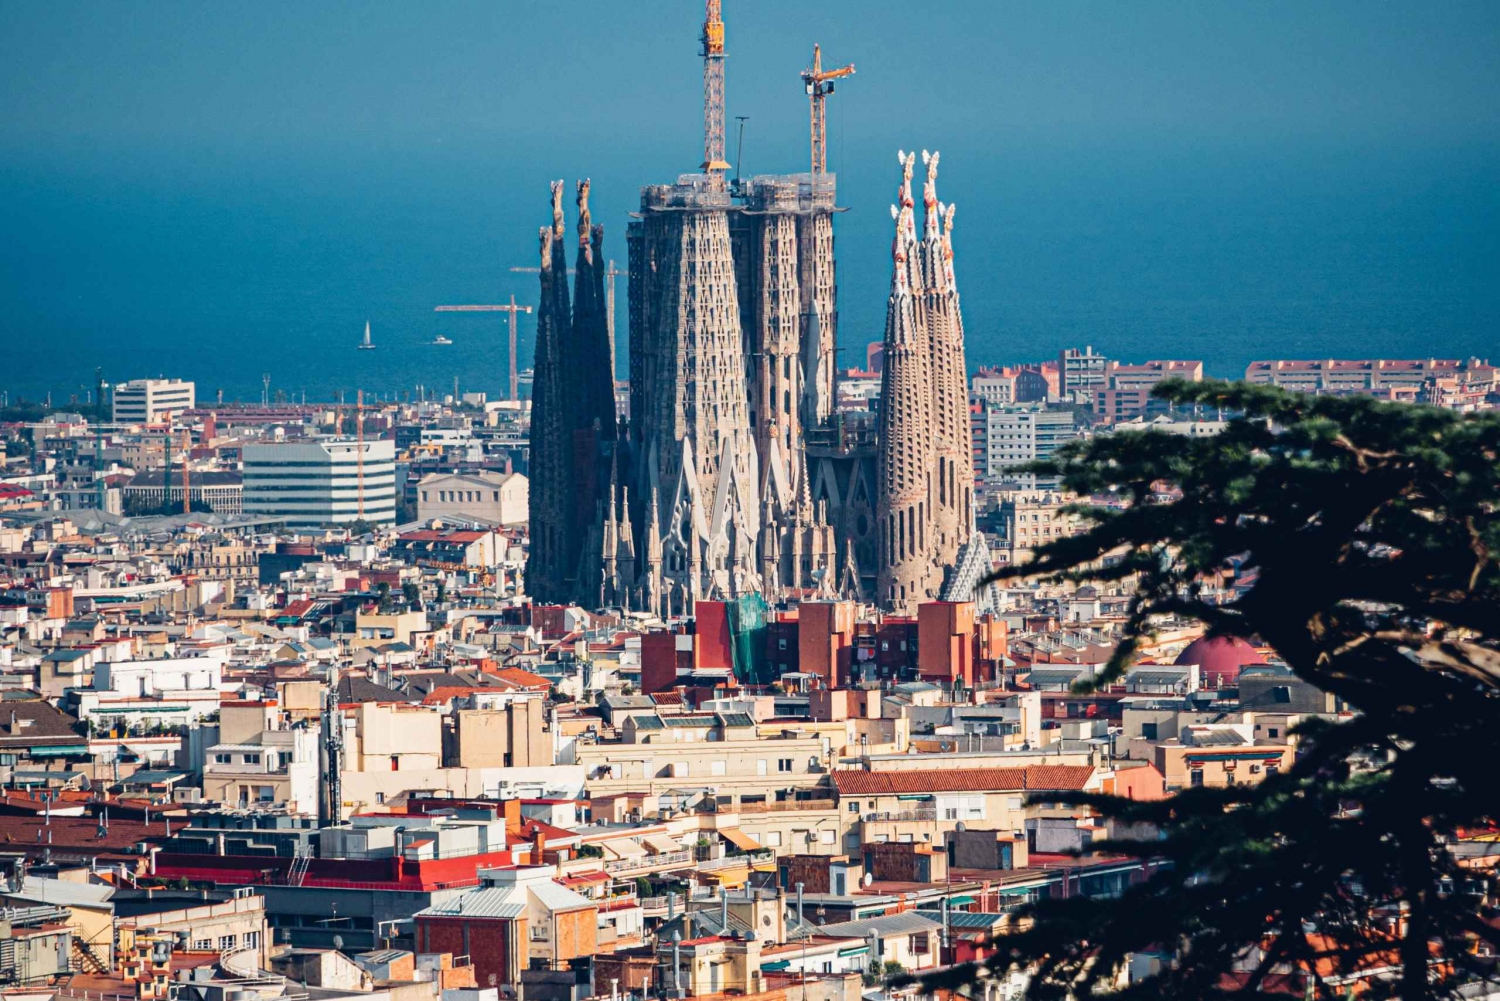 Biglietti per la Sagrada Familia: Esplora il capolavoro di Gaudí